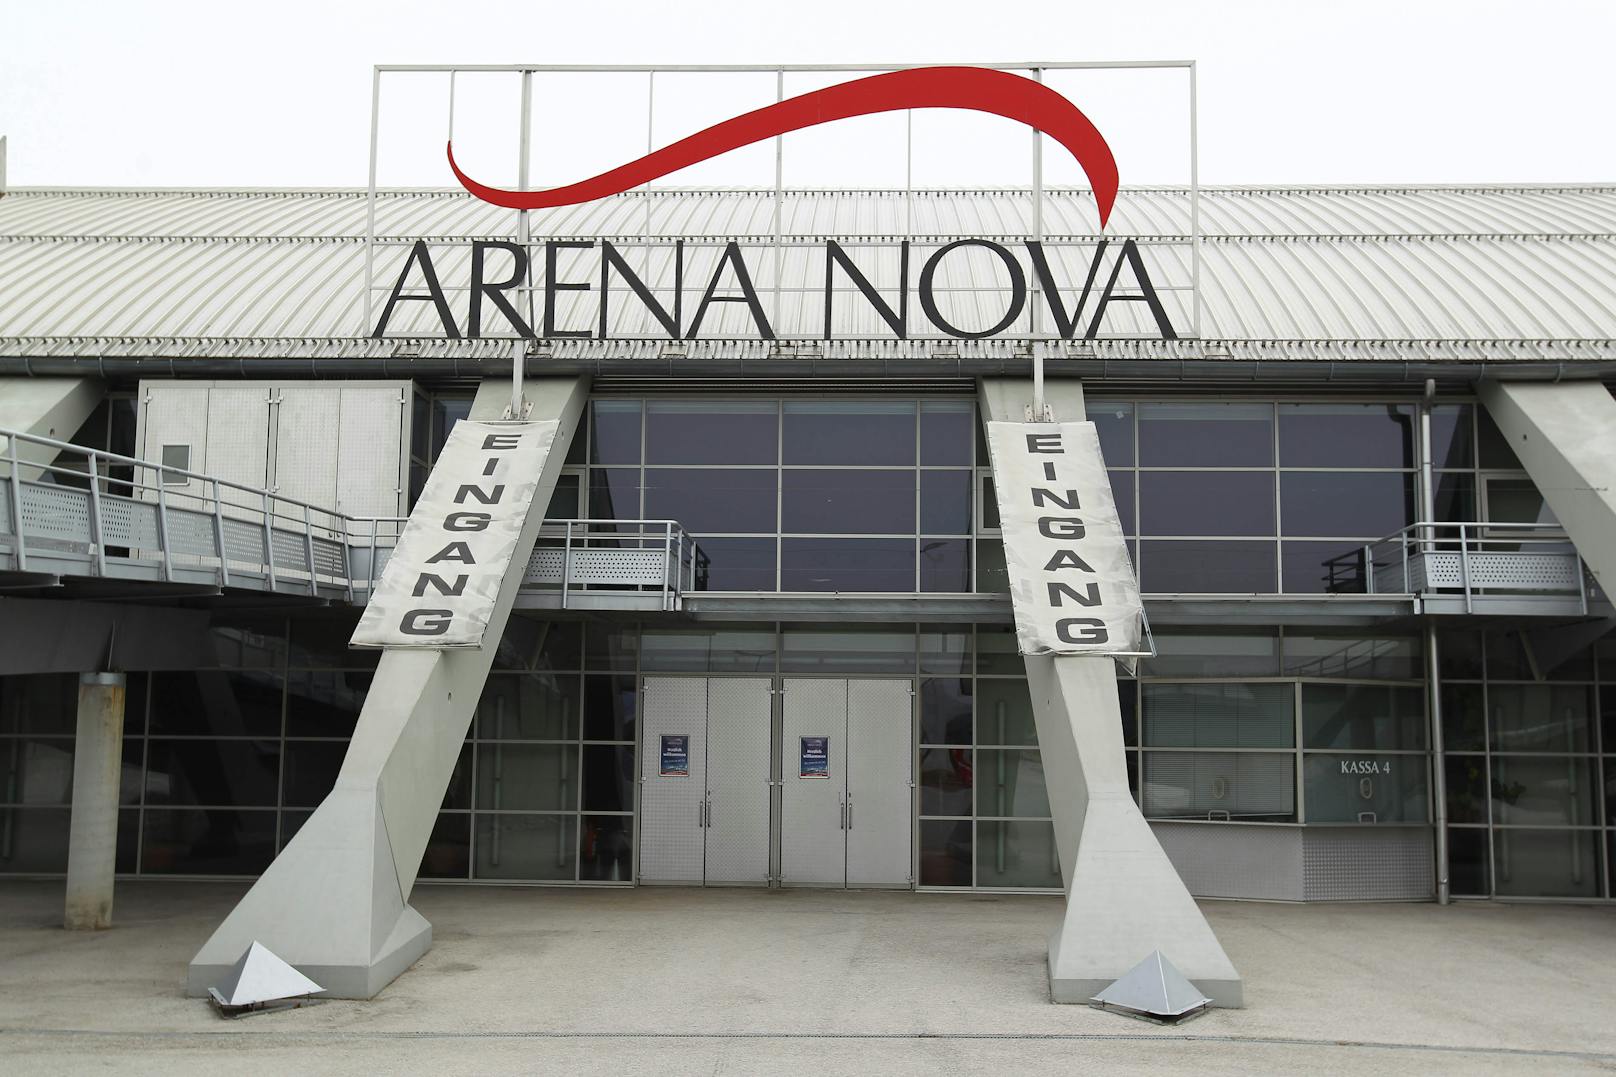 Die Tests finden in der Arena Nova statt.